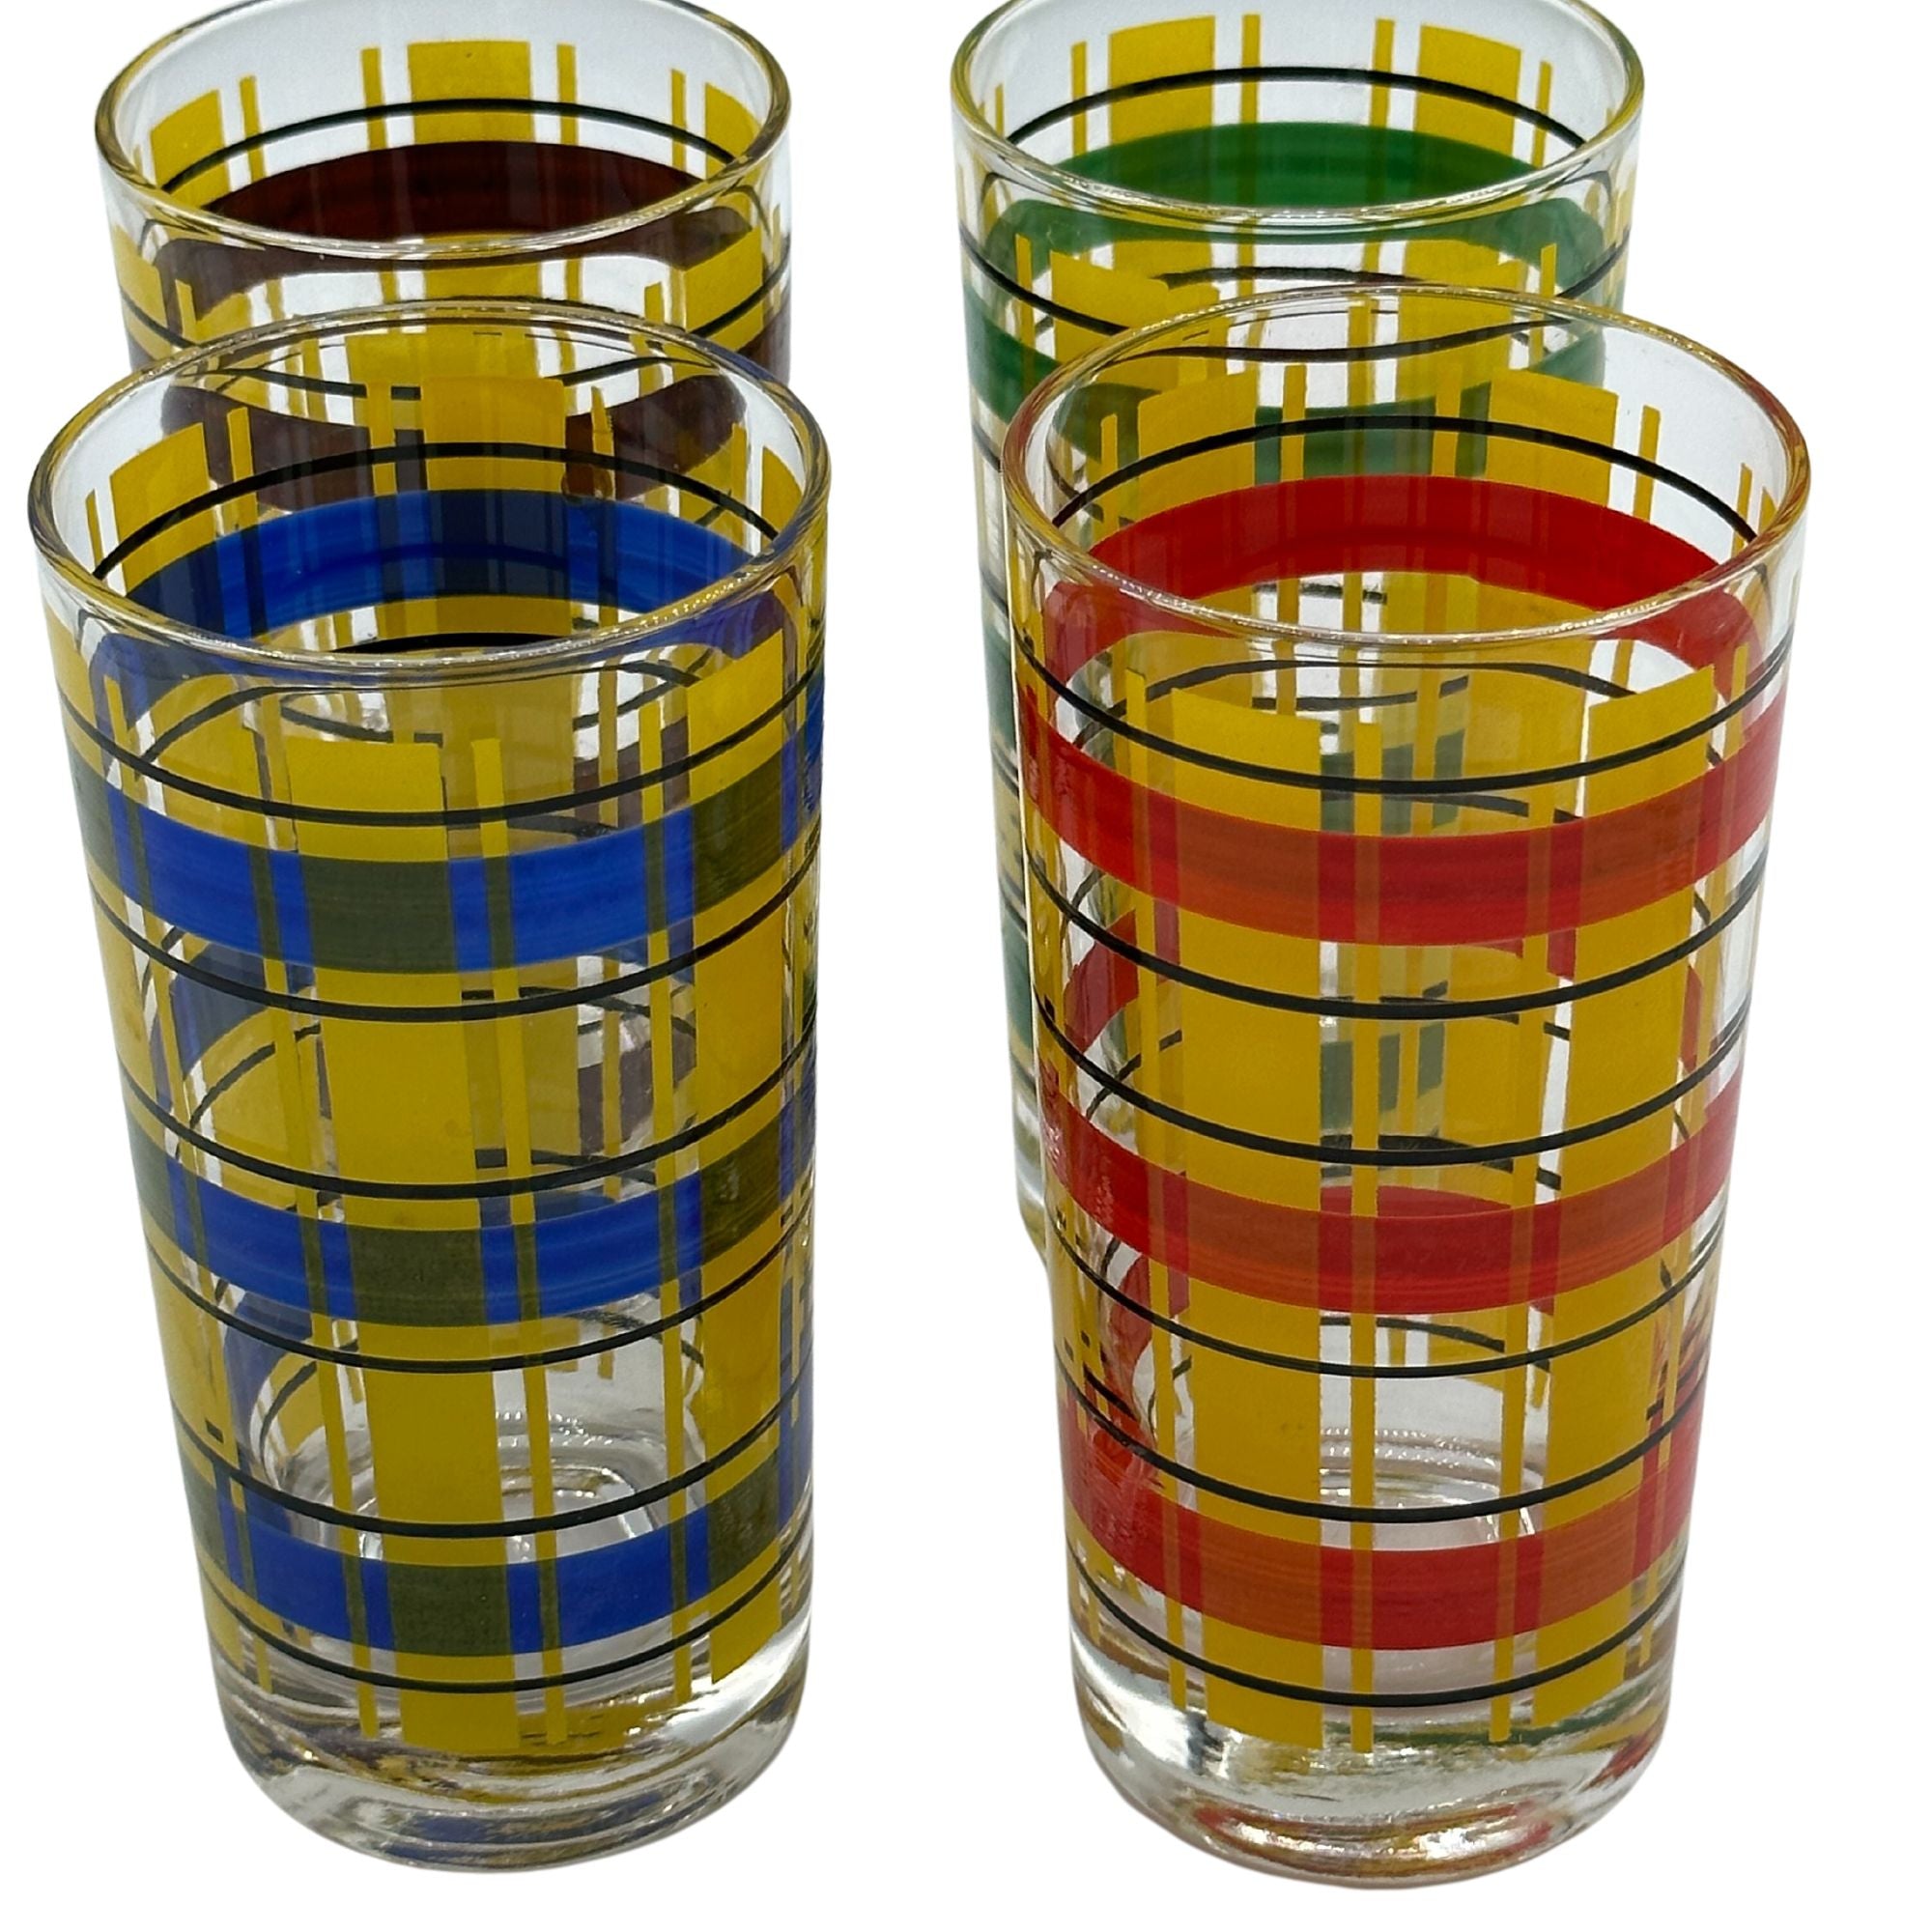 mod vintage glass drinking glasses w/ red & white stripes, fun retro  glassware set